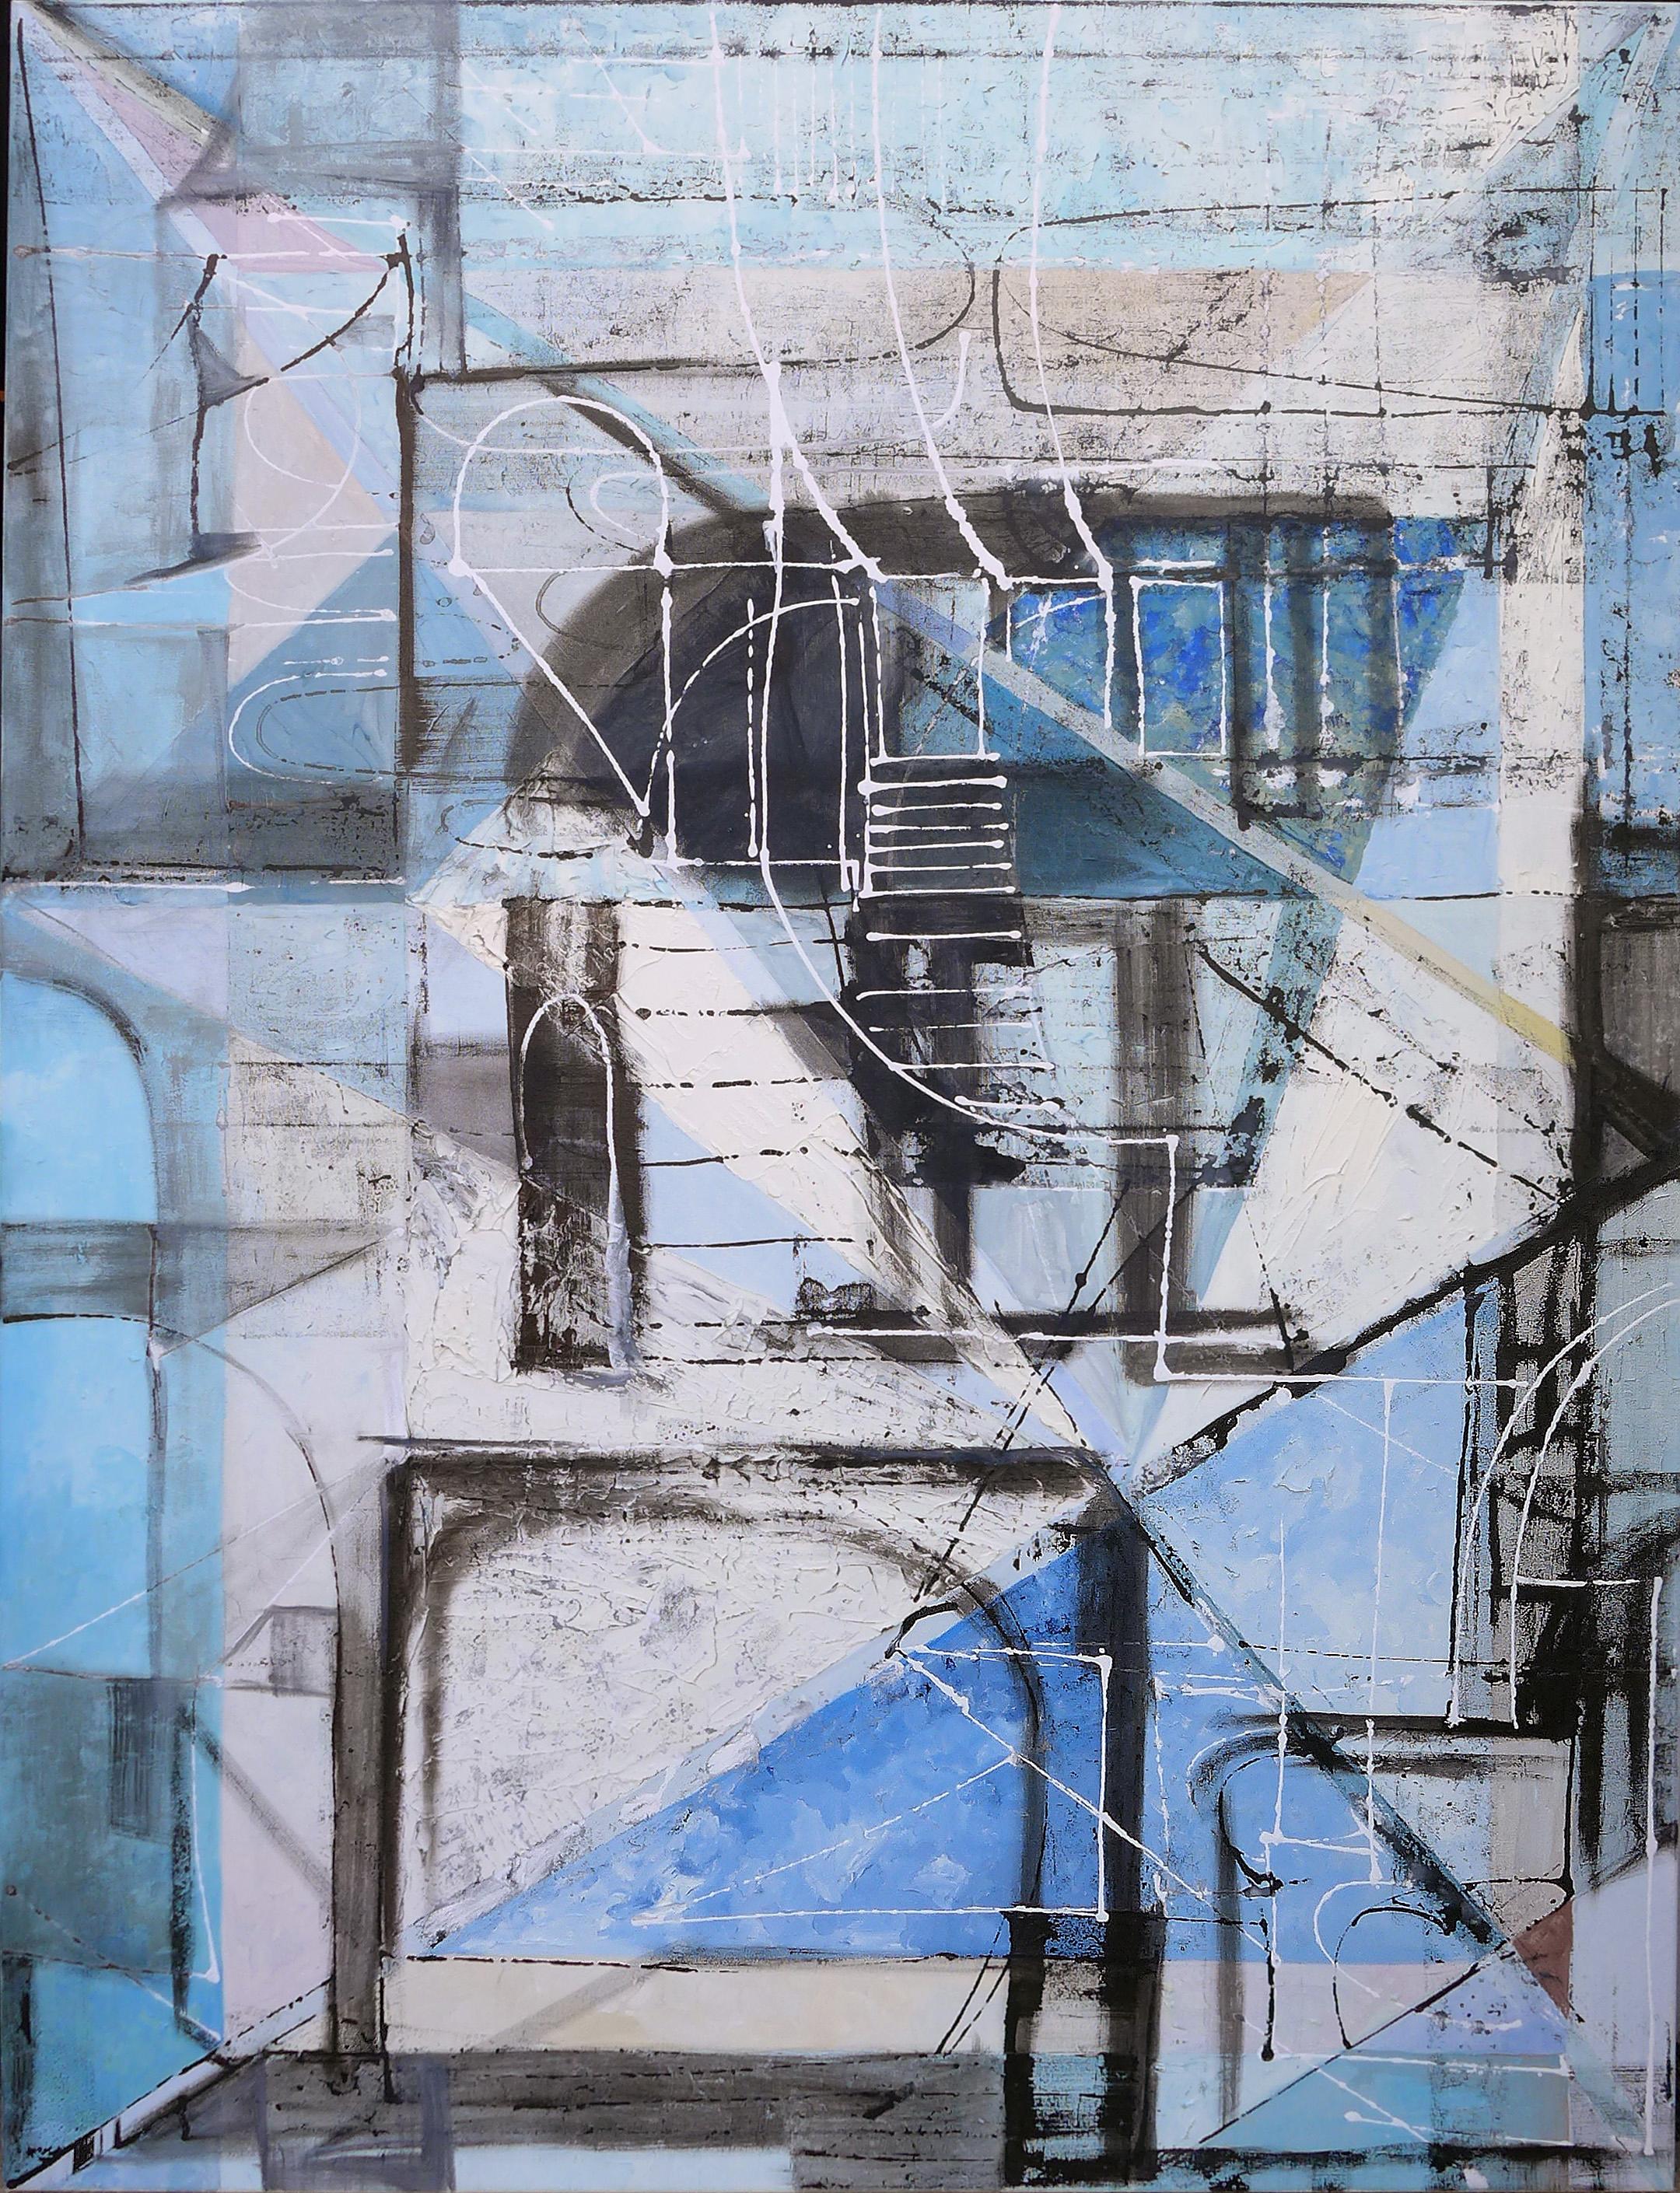 Lost City Blues 01 - Großes zeitgenössisches abstraktes expressionistisches Gemälde in Blau